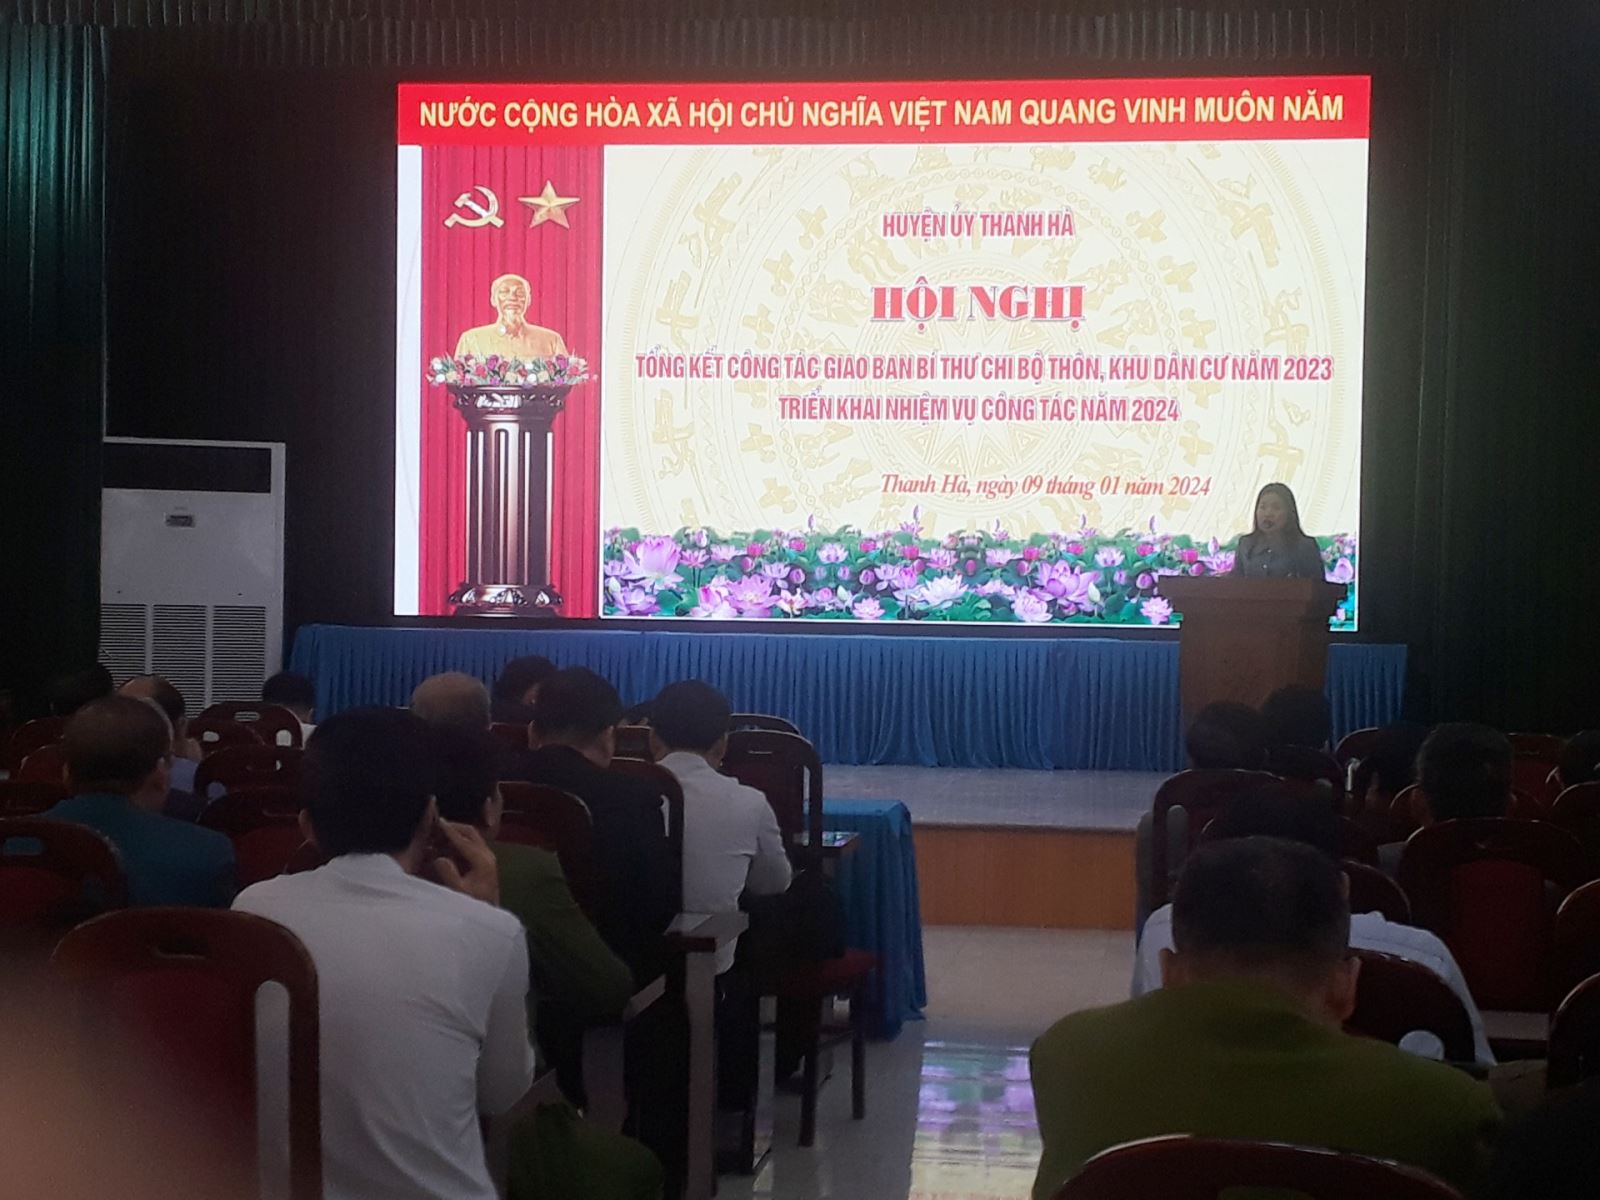 Huyện ủy Thanh Hà nâng cao chất lượng giao ban bí thư chi bộ thôn, khu dân cư